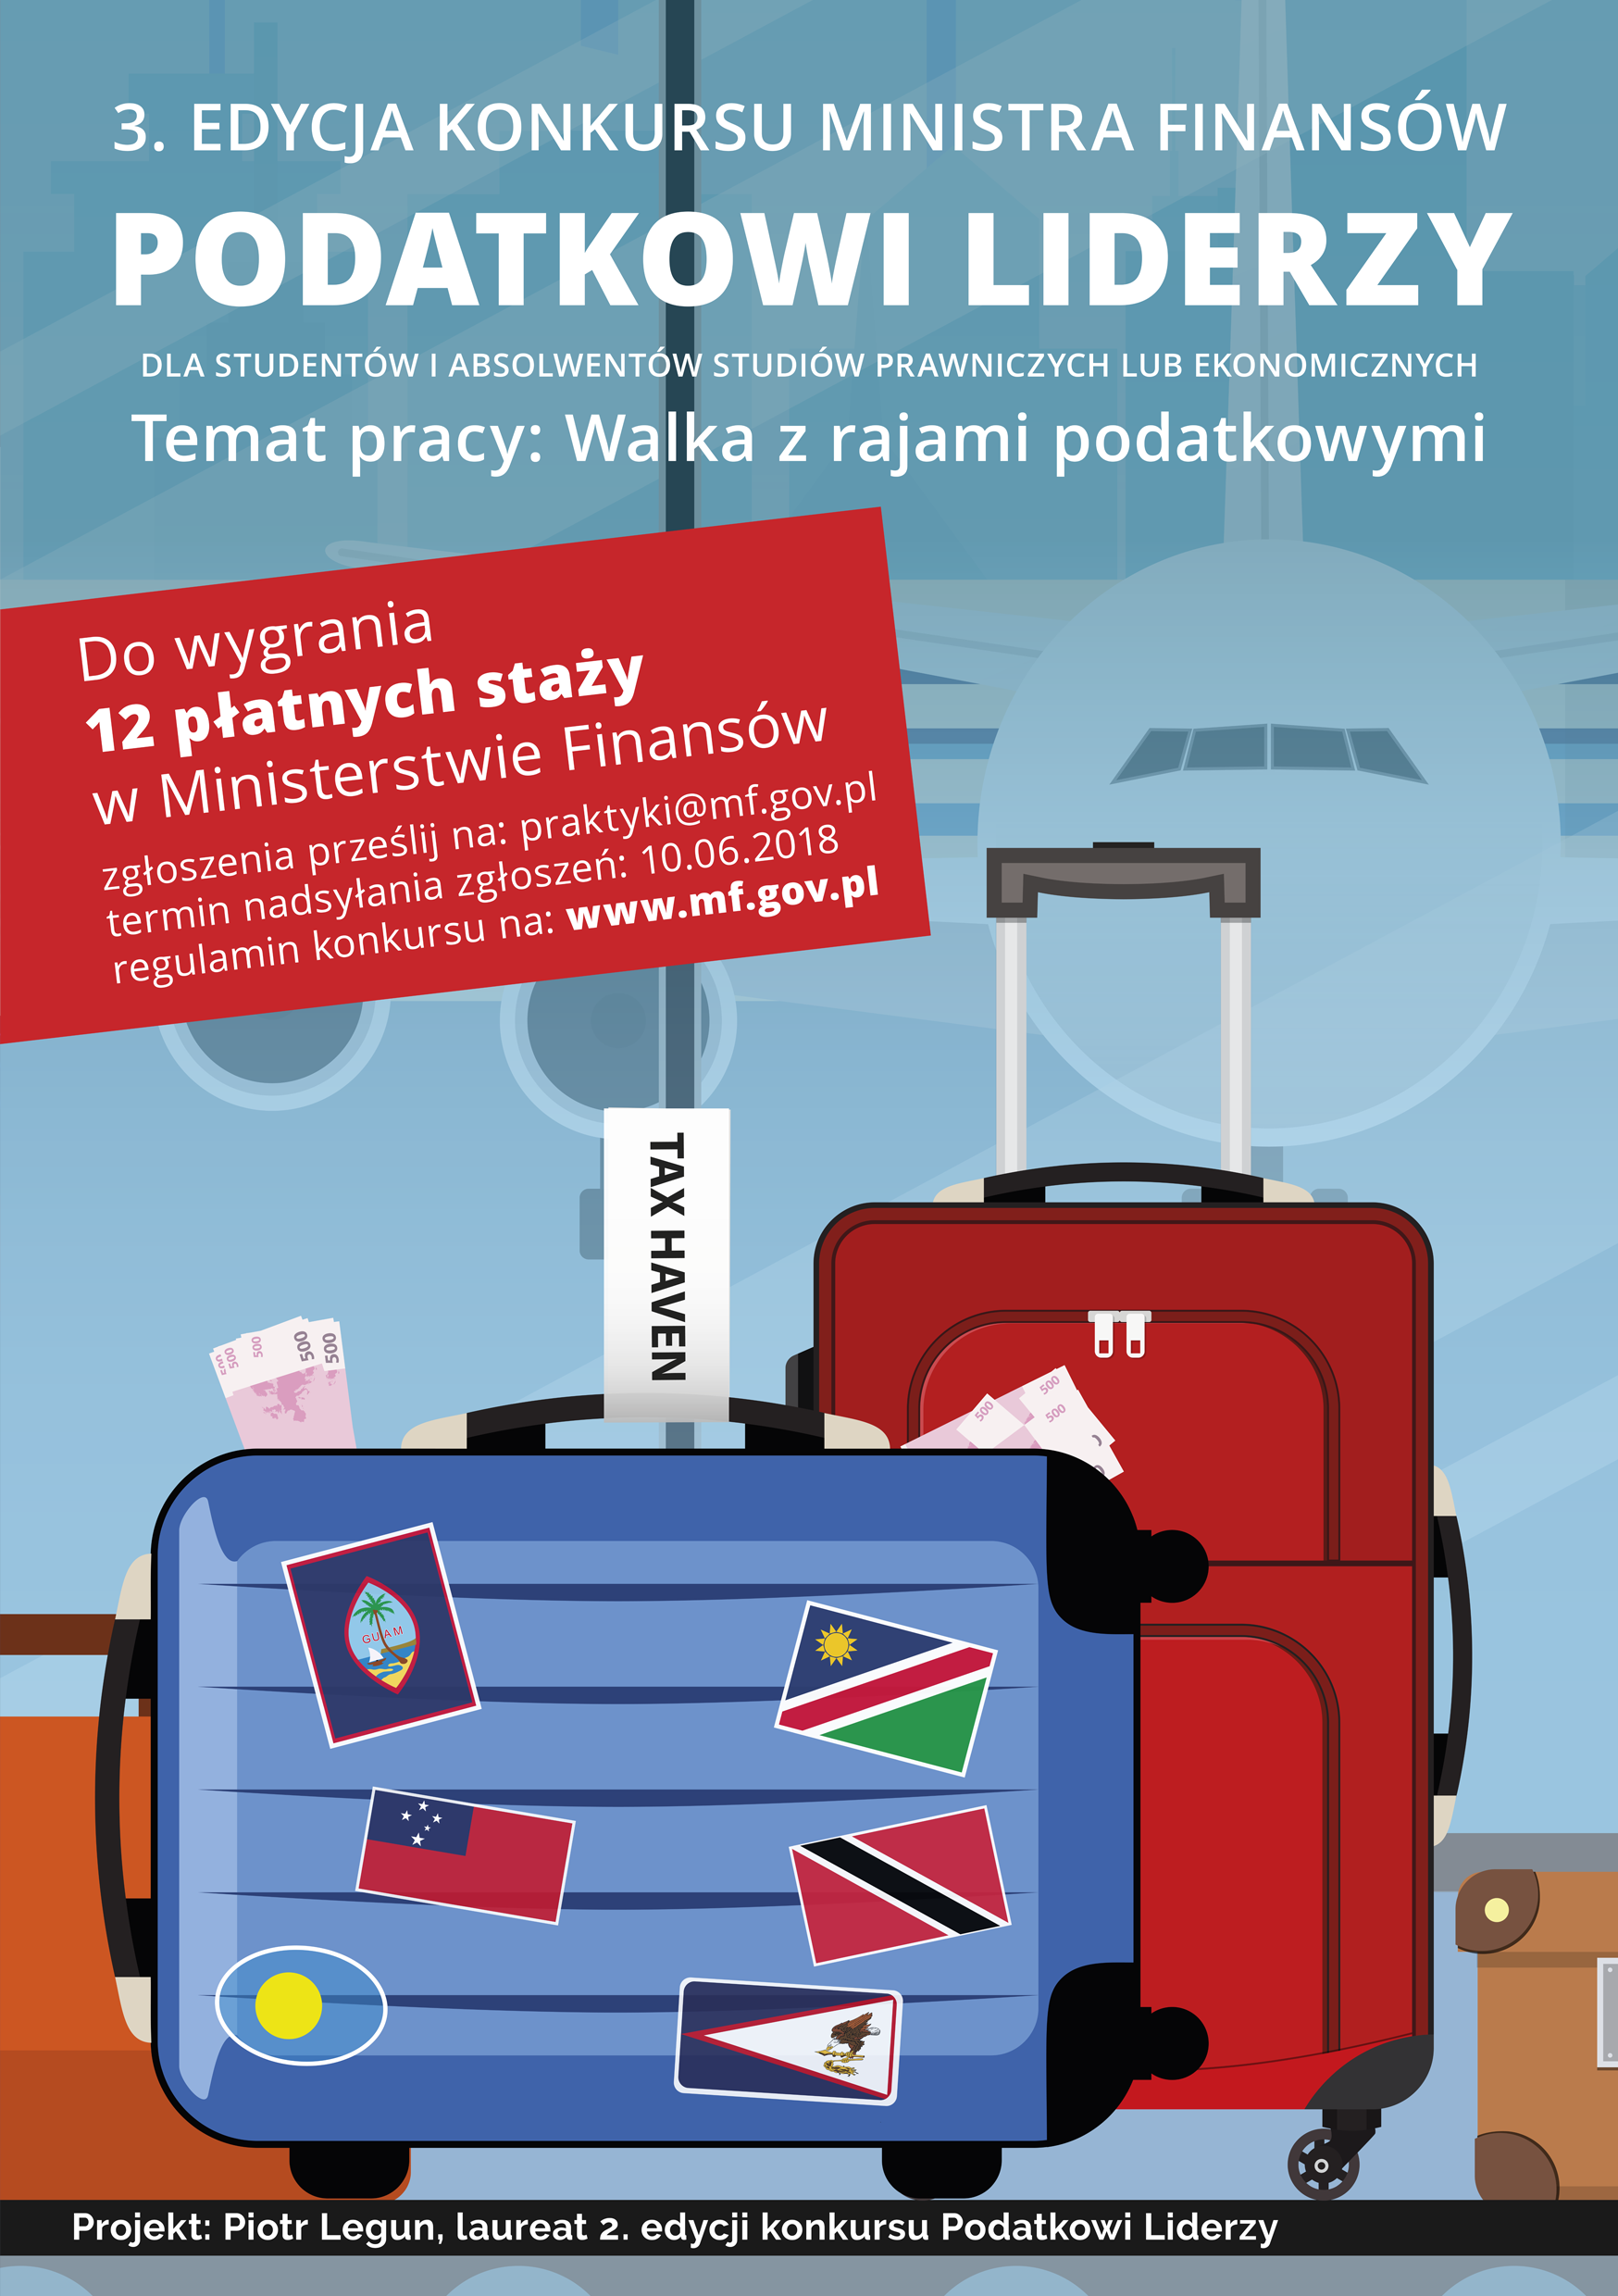 Plakat konkursowy z podstawowymi informacjami, grafika: dwie walizki, jedna oklejona flagami różnych państw